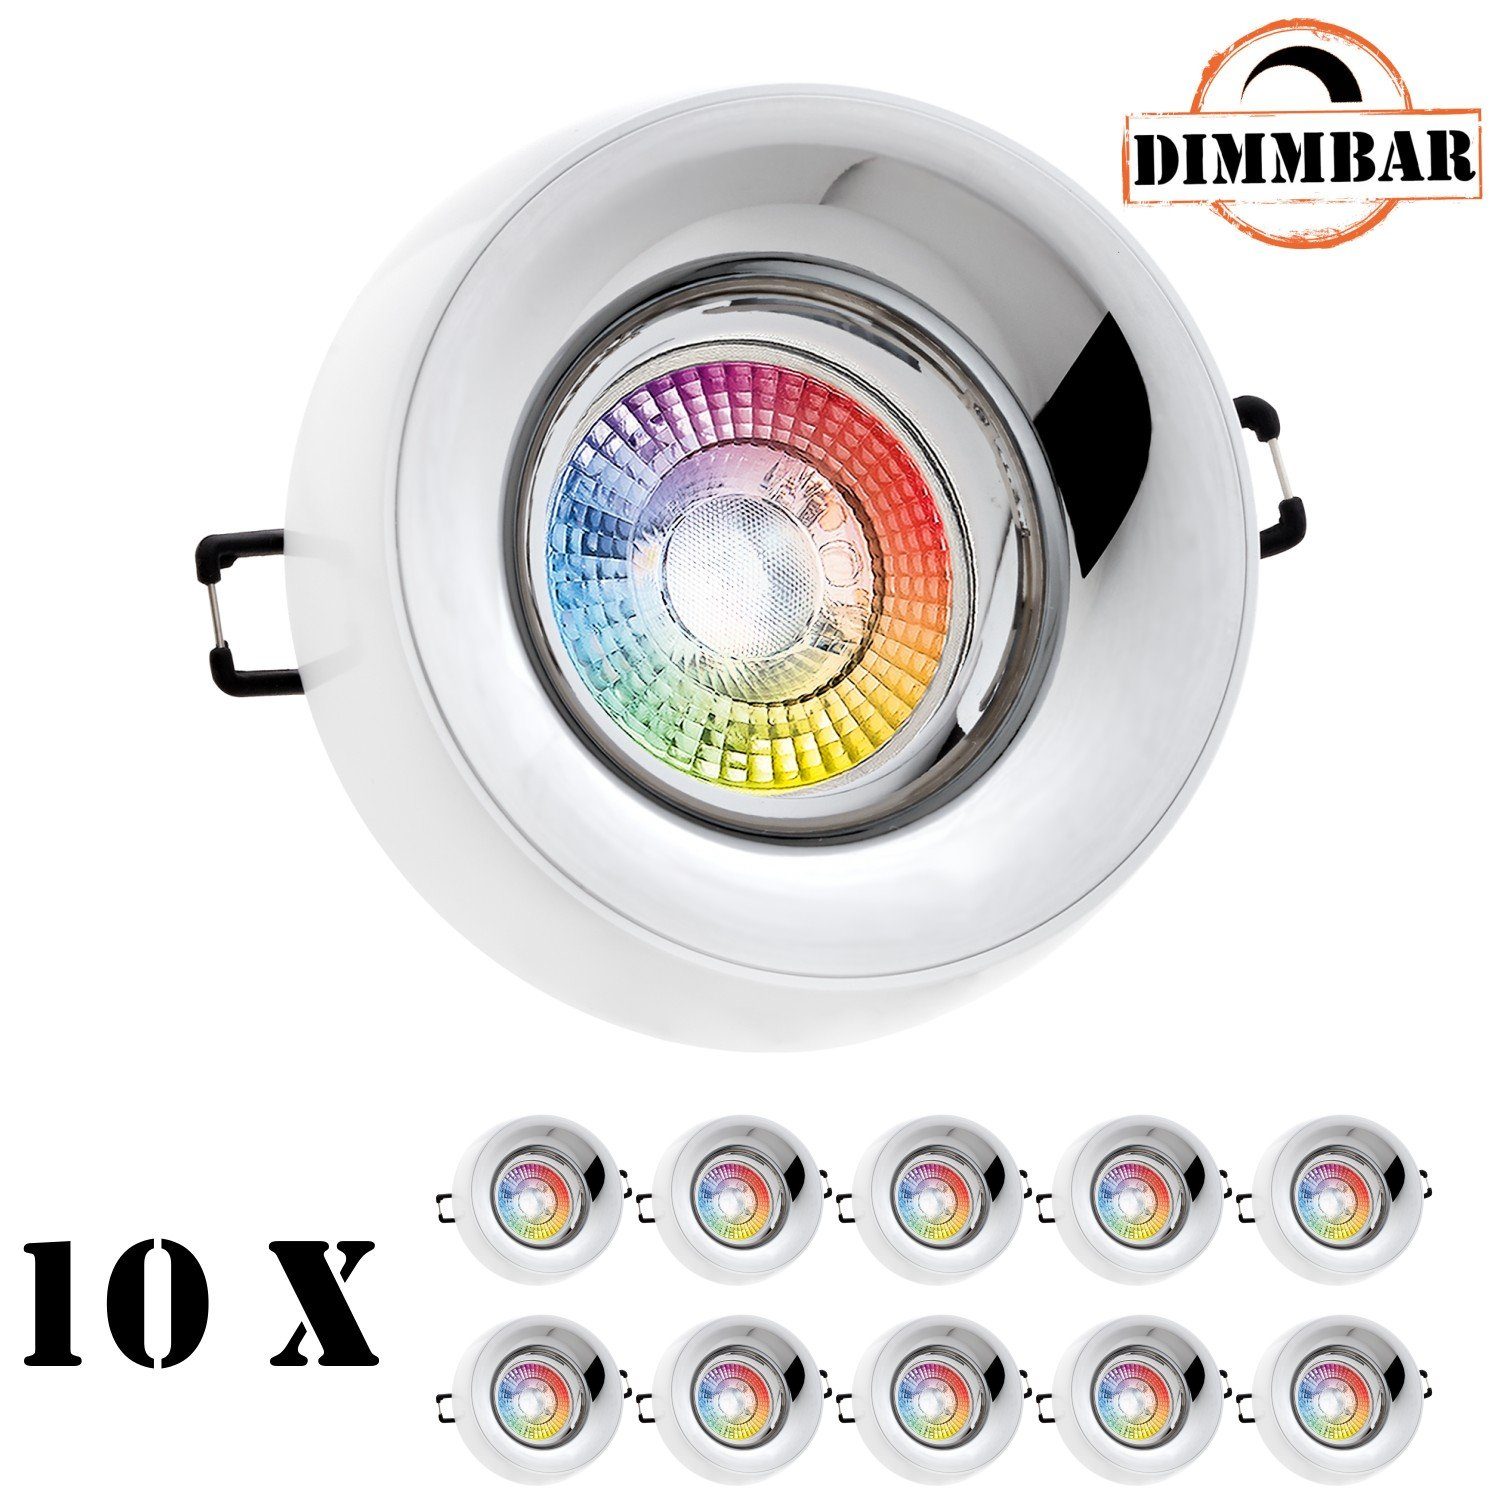 LEDANDO LED Einbaustrahler 10er RGB LED Einbaustrahler Set extra flach in  weiß mit 3W LED von LED, 10x LED Leuchtmittel 3W - 11 Farben + Warmweiß -  inkl. Fernbedienung - dimmbar